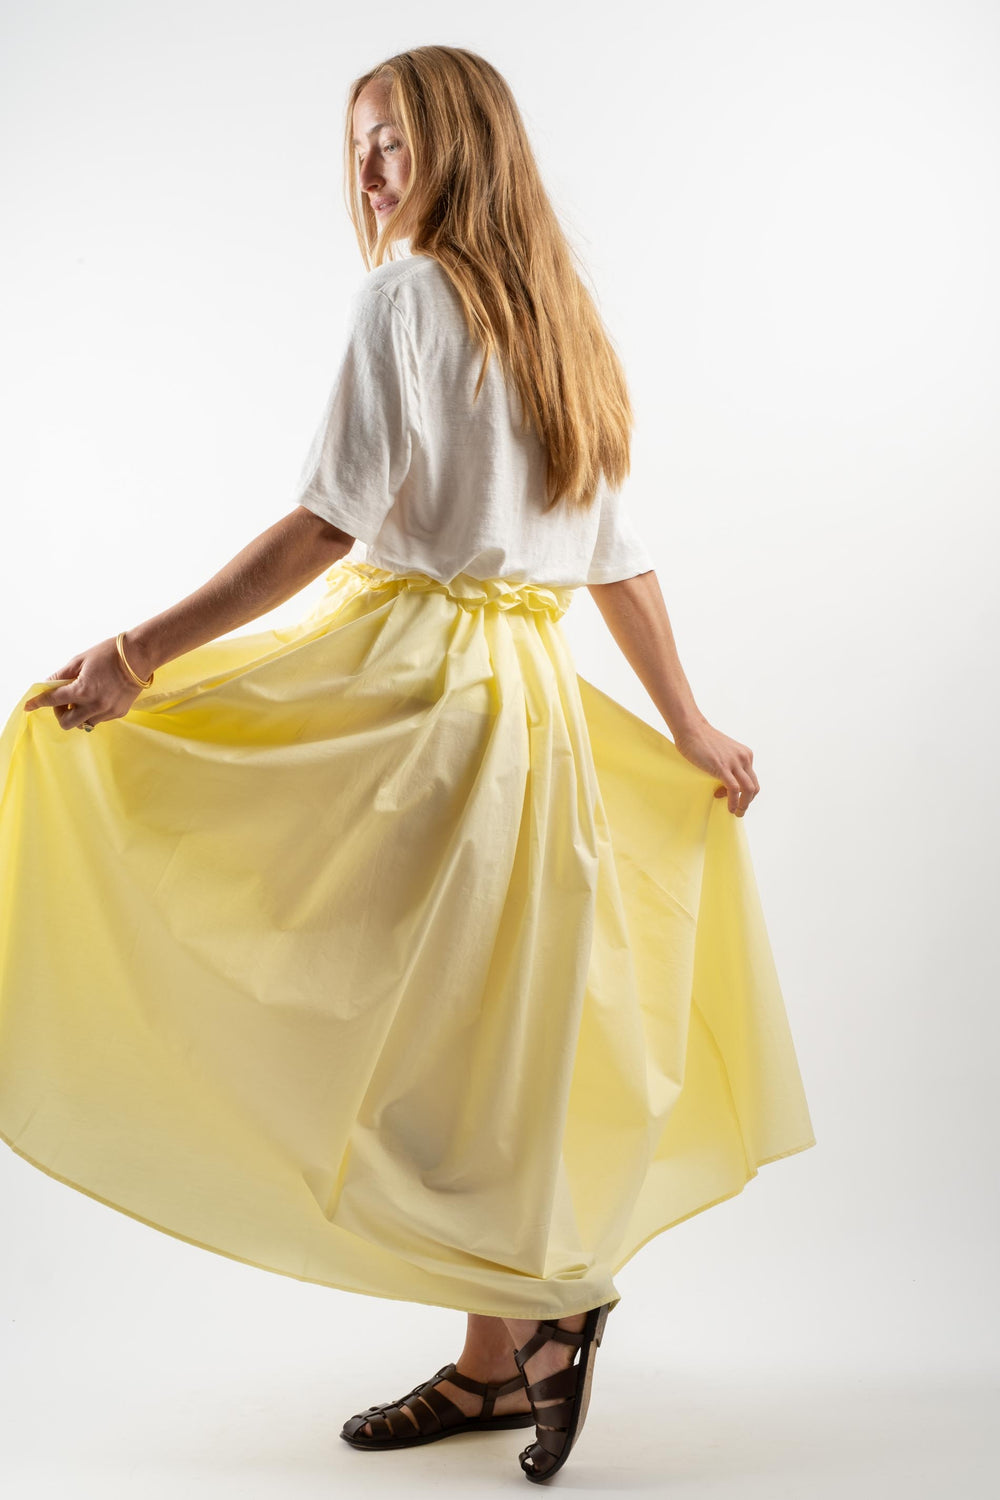 Parachute Skirt in Lemon